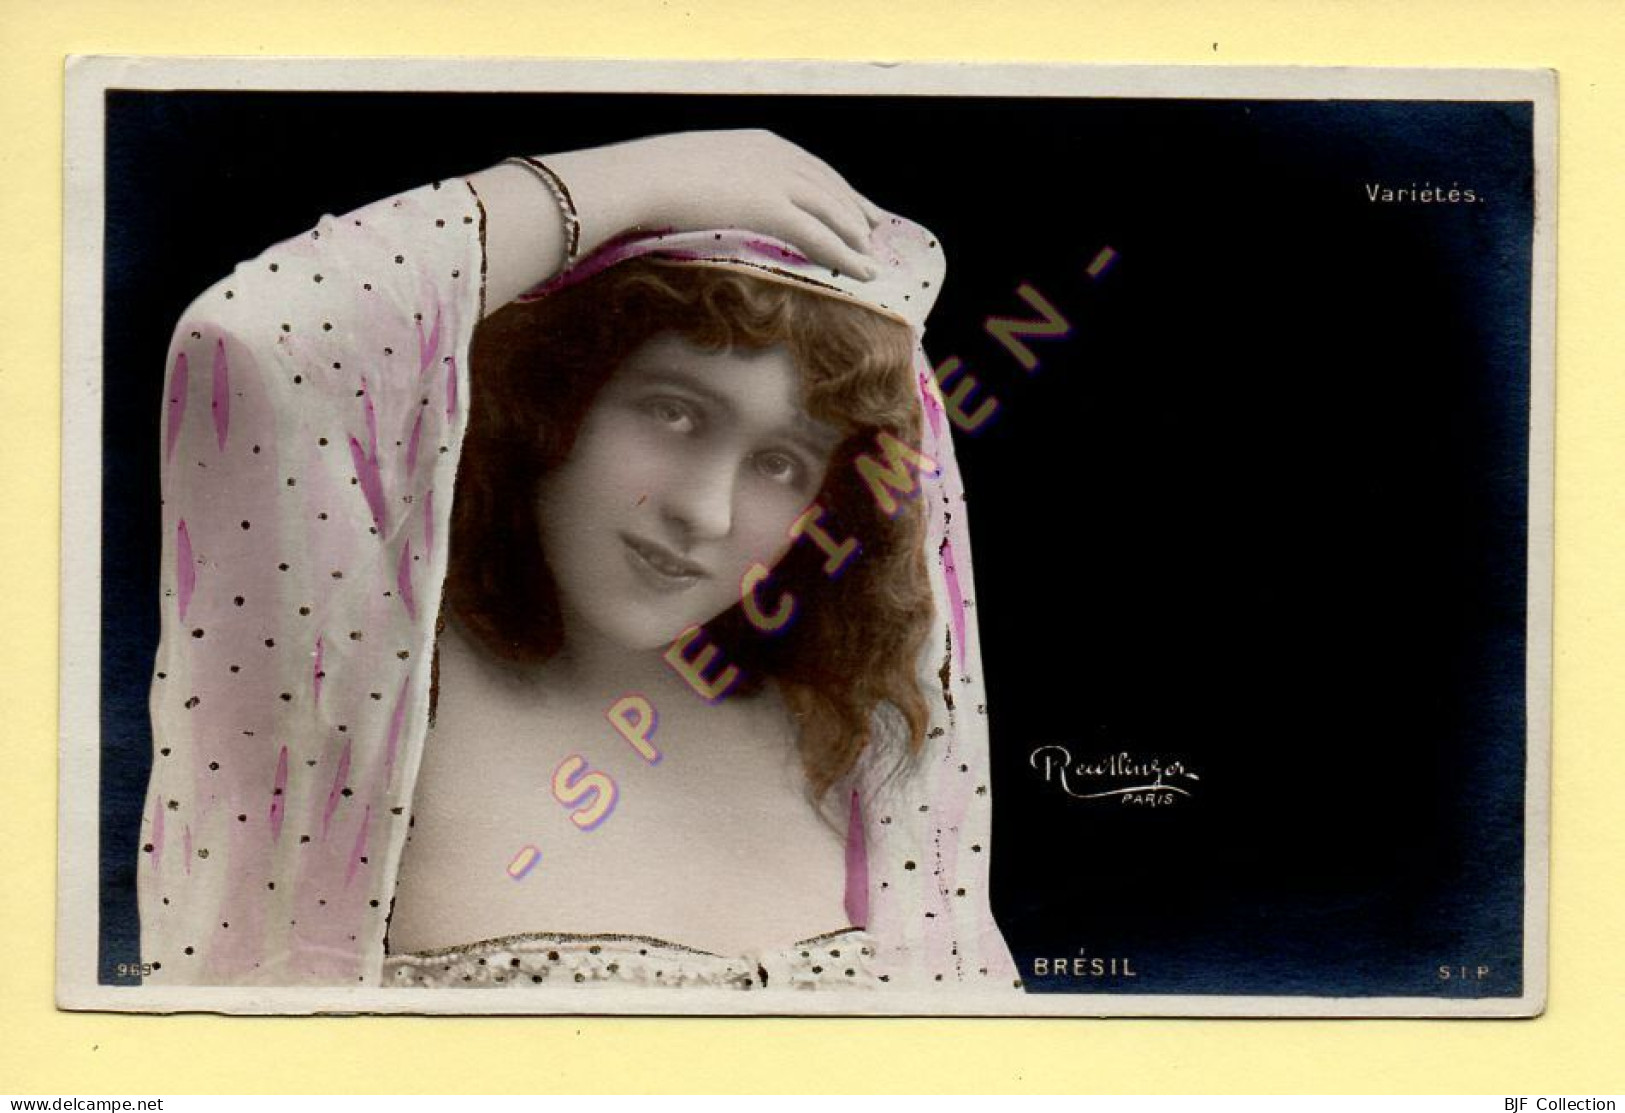 BRESIL – Artiste 1900 – Femme (Variétés) – Photo Reutlinger Paris (voir Cachet Hopital De Campagne N°1) - Artistas